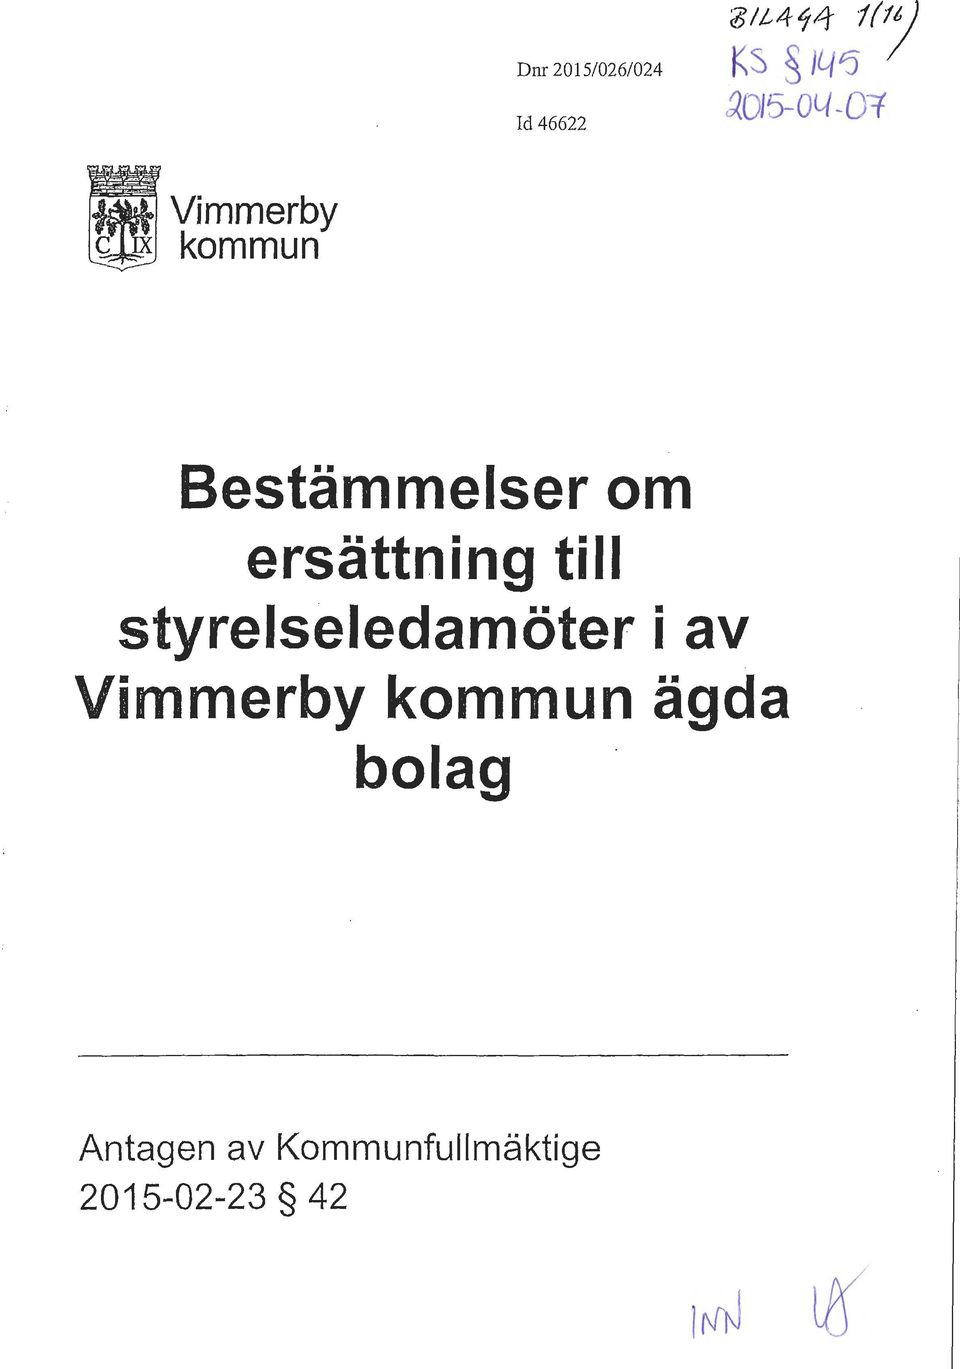 ersättning till styrelseledamöter i av Vimmerby